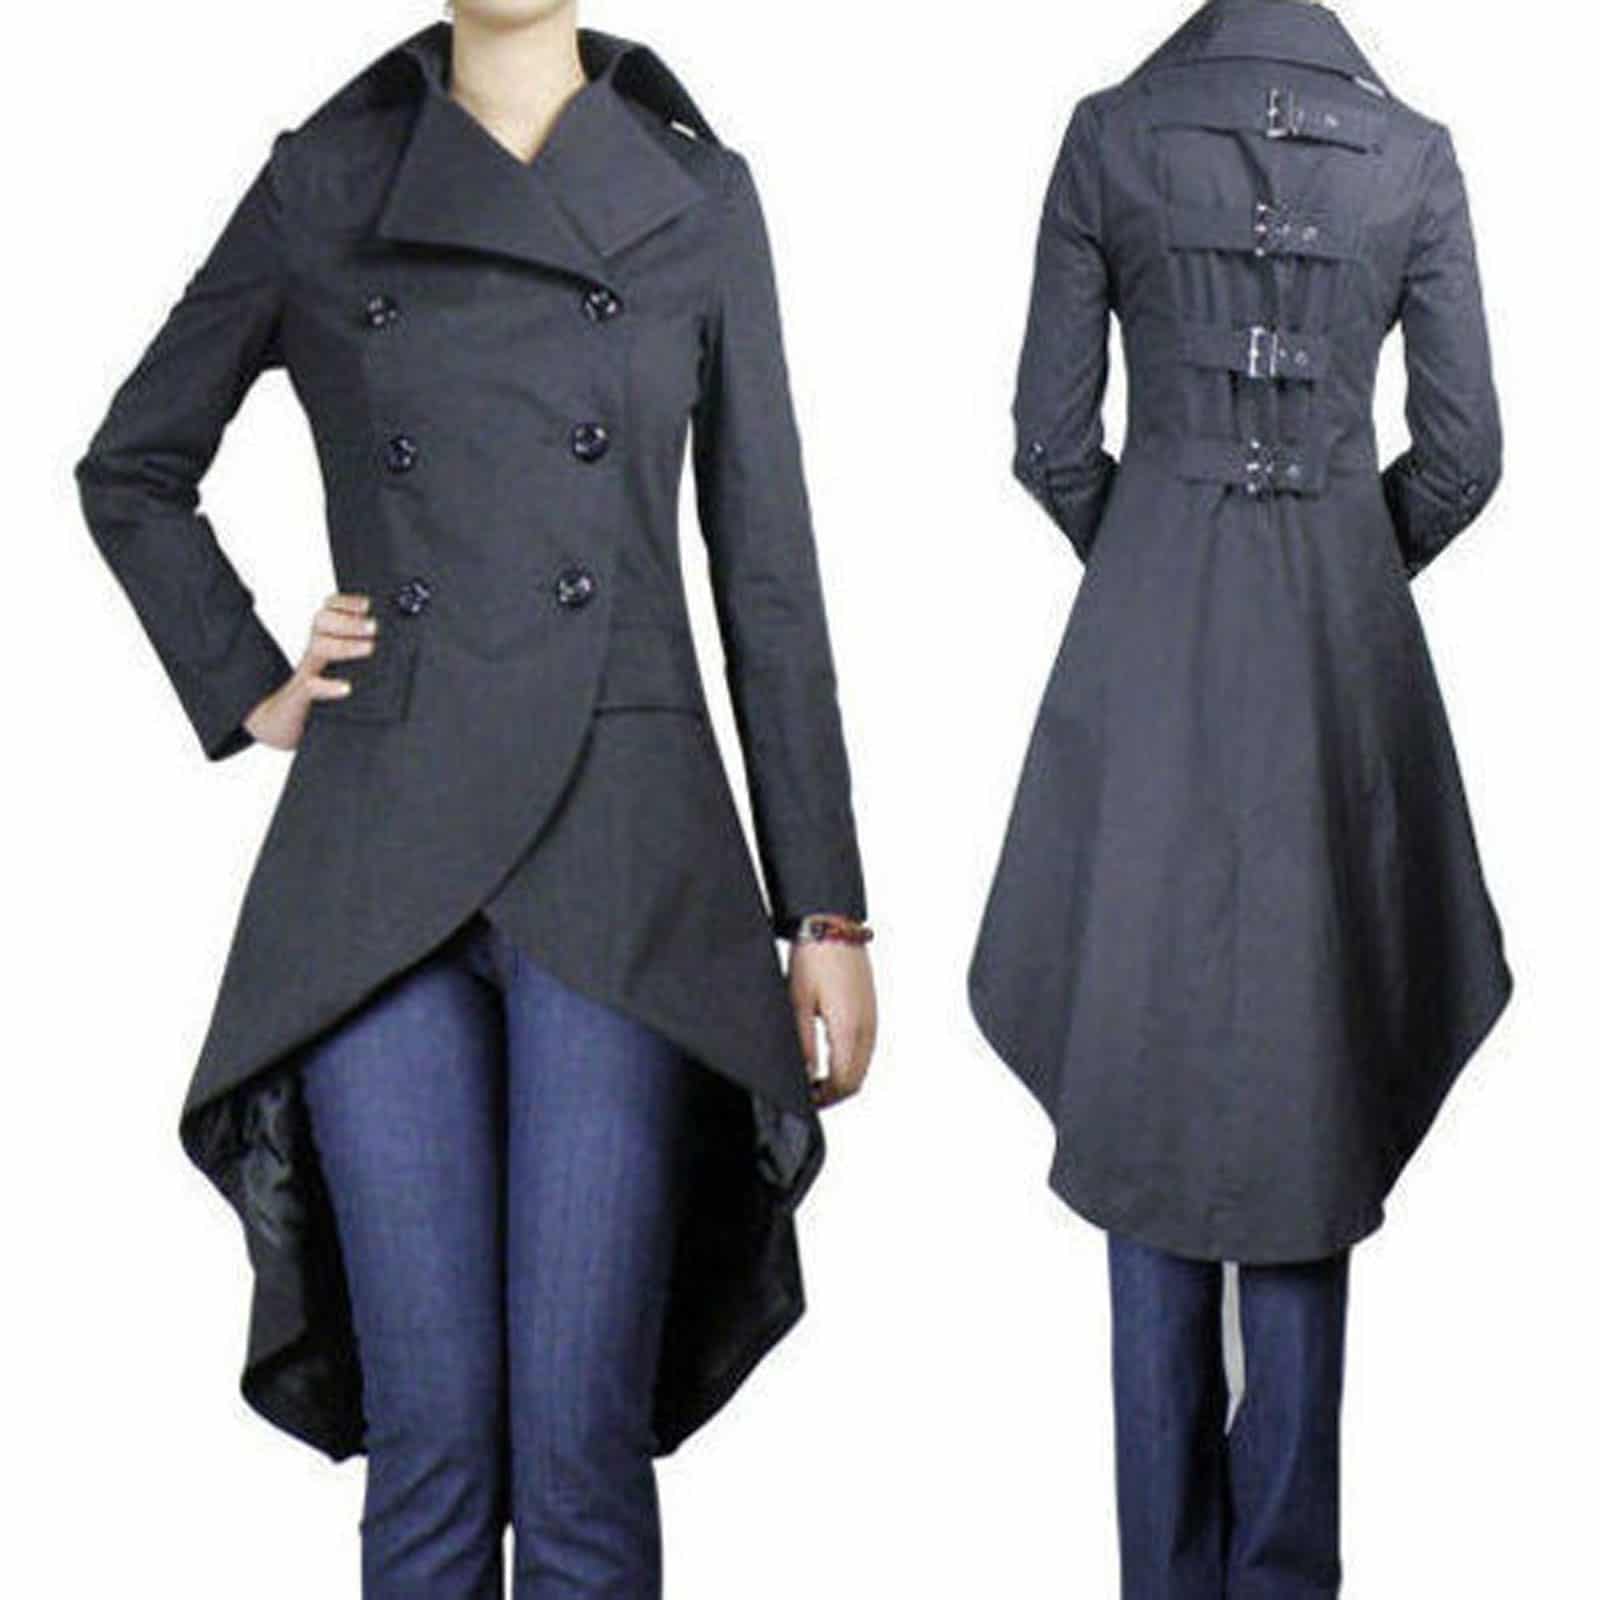 Långa jackor fishtailrock, långa jackor för kvinnor, kvinnor gotiska jackor, bästa jackor för kvinnor HOSVAEJ